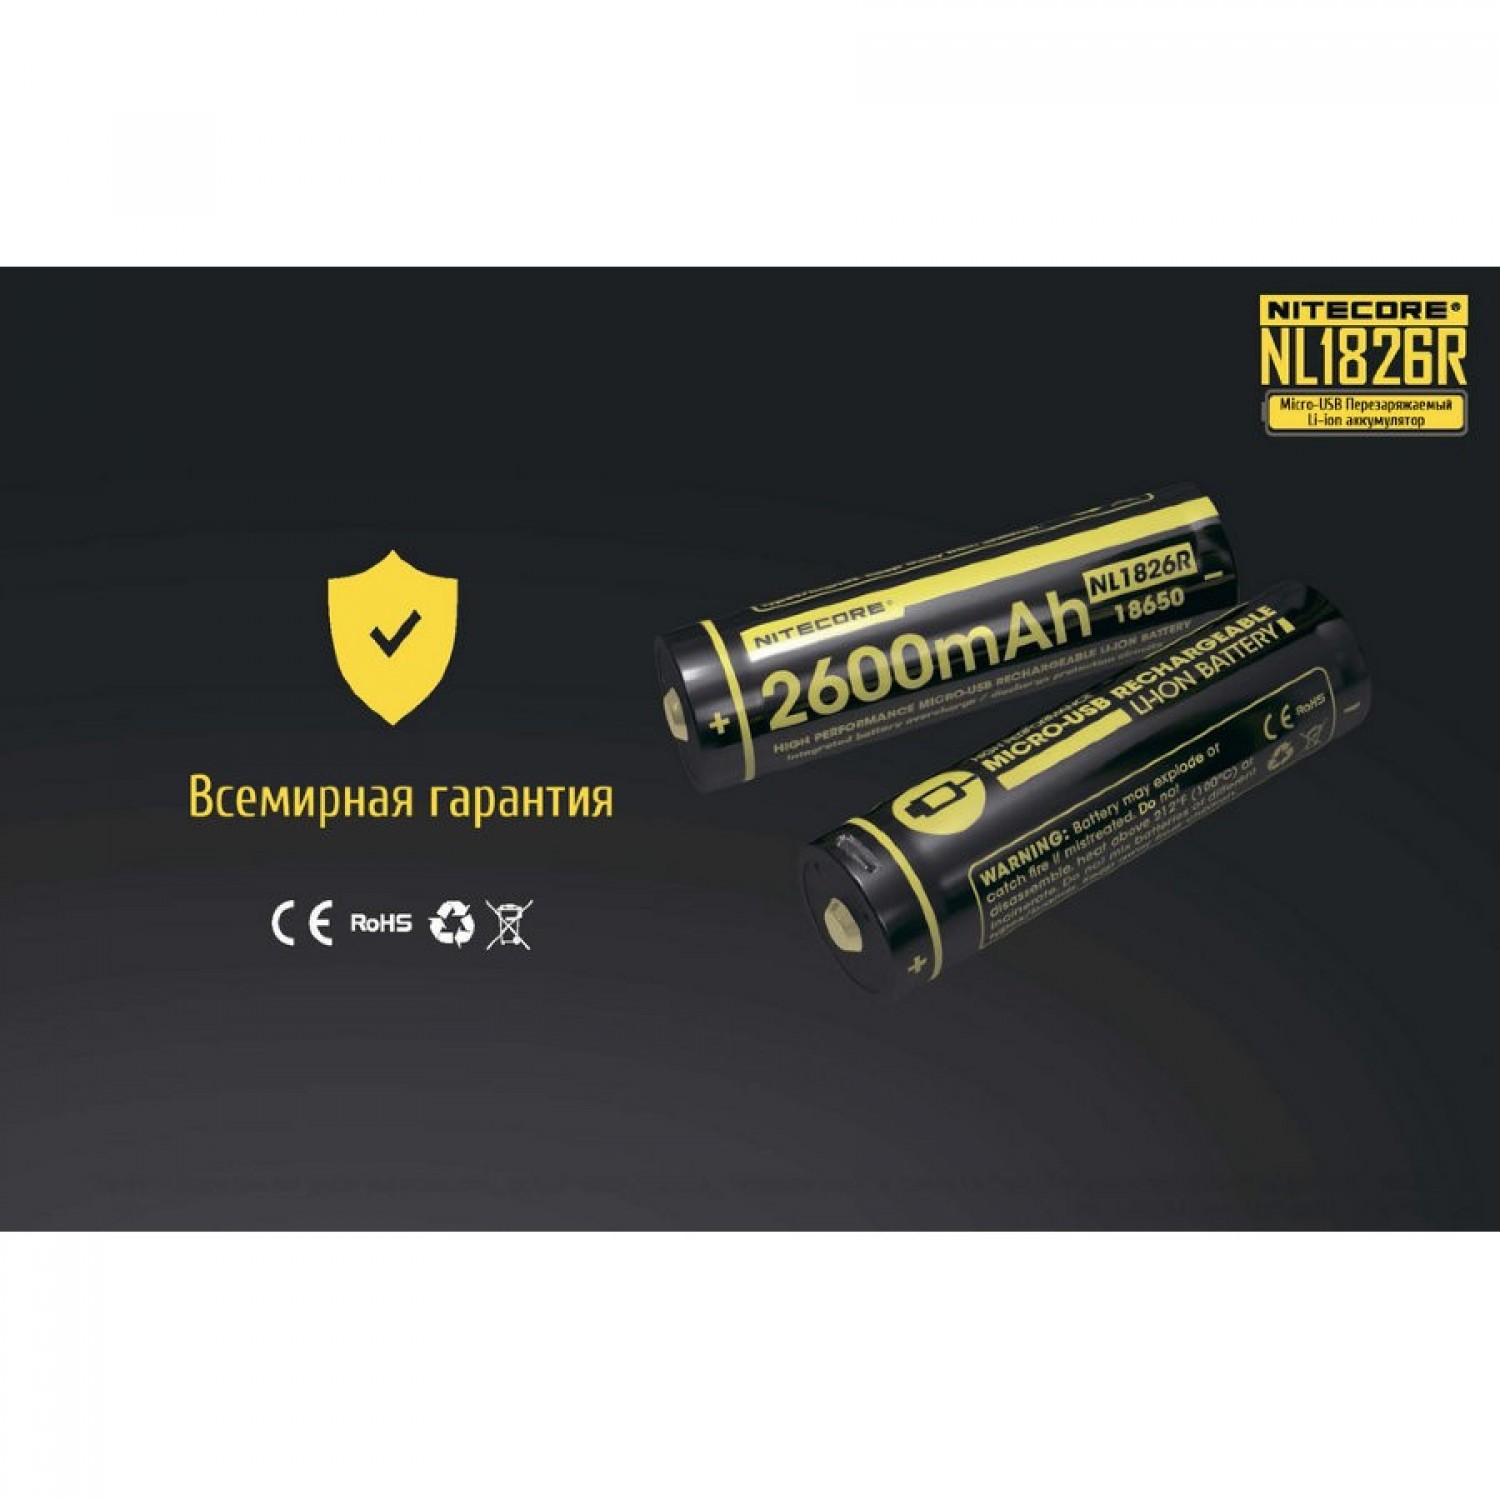 Bateria 18650 de Litio recargable Nitecore NL1826R